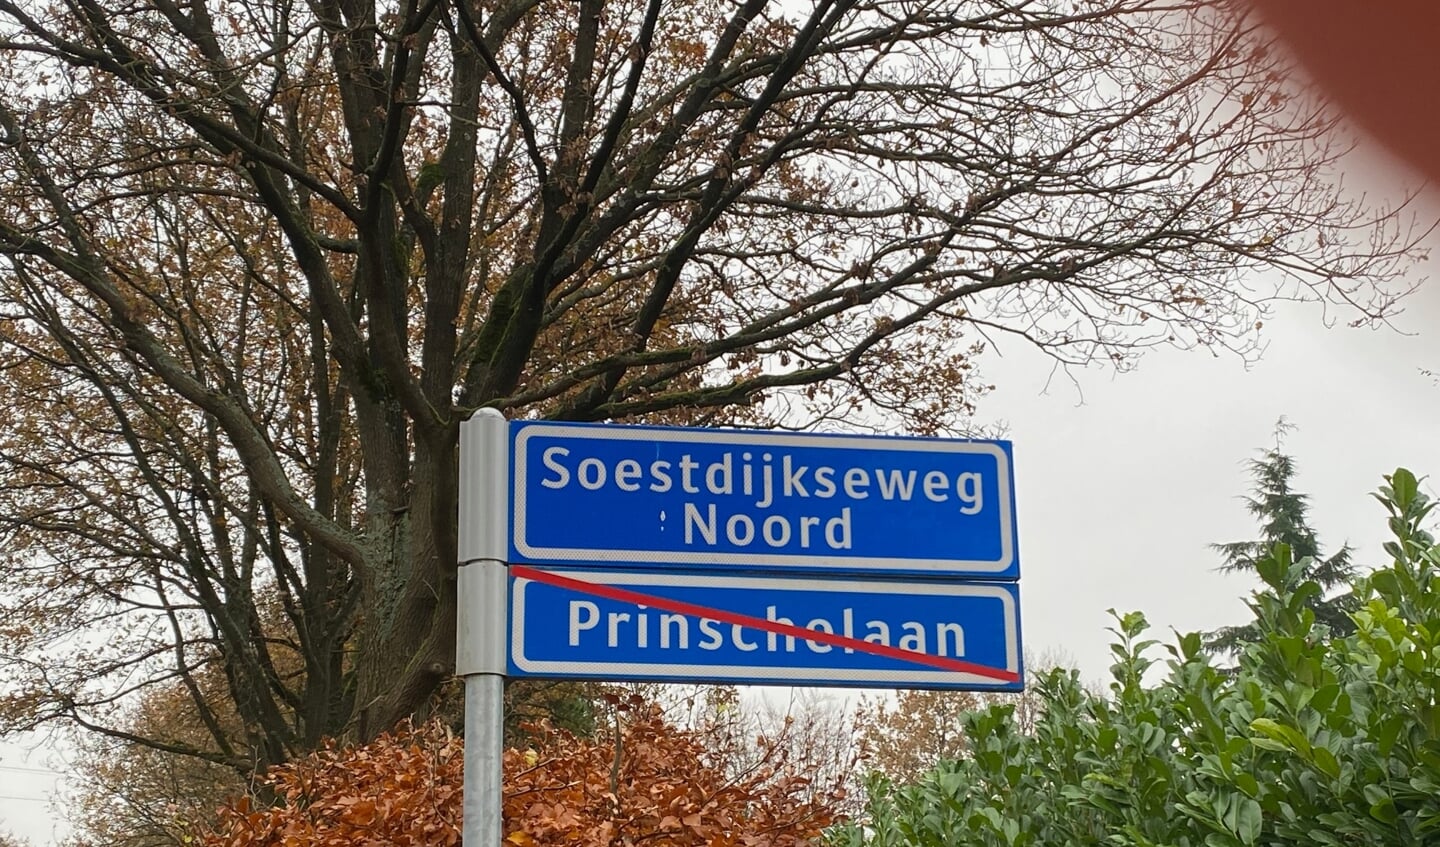 Sinds 2019 wordt er gestreden over Prinschelaan als straatnaam.